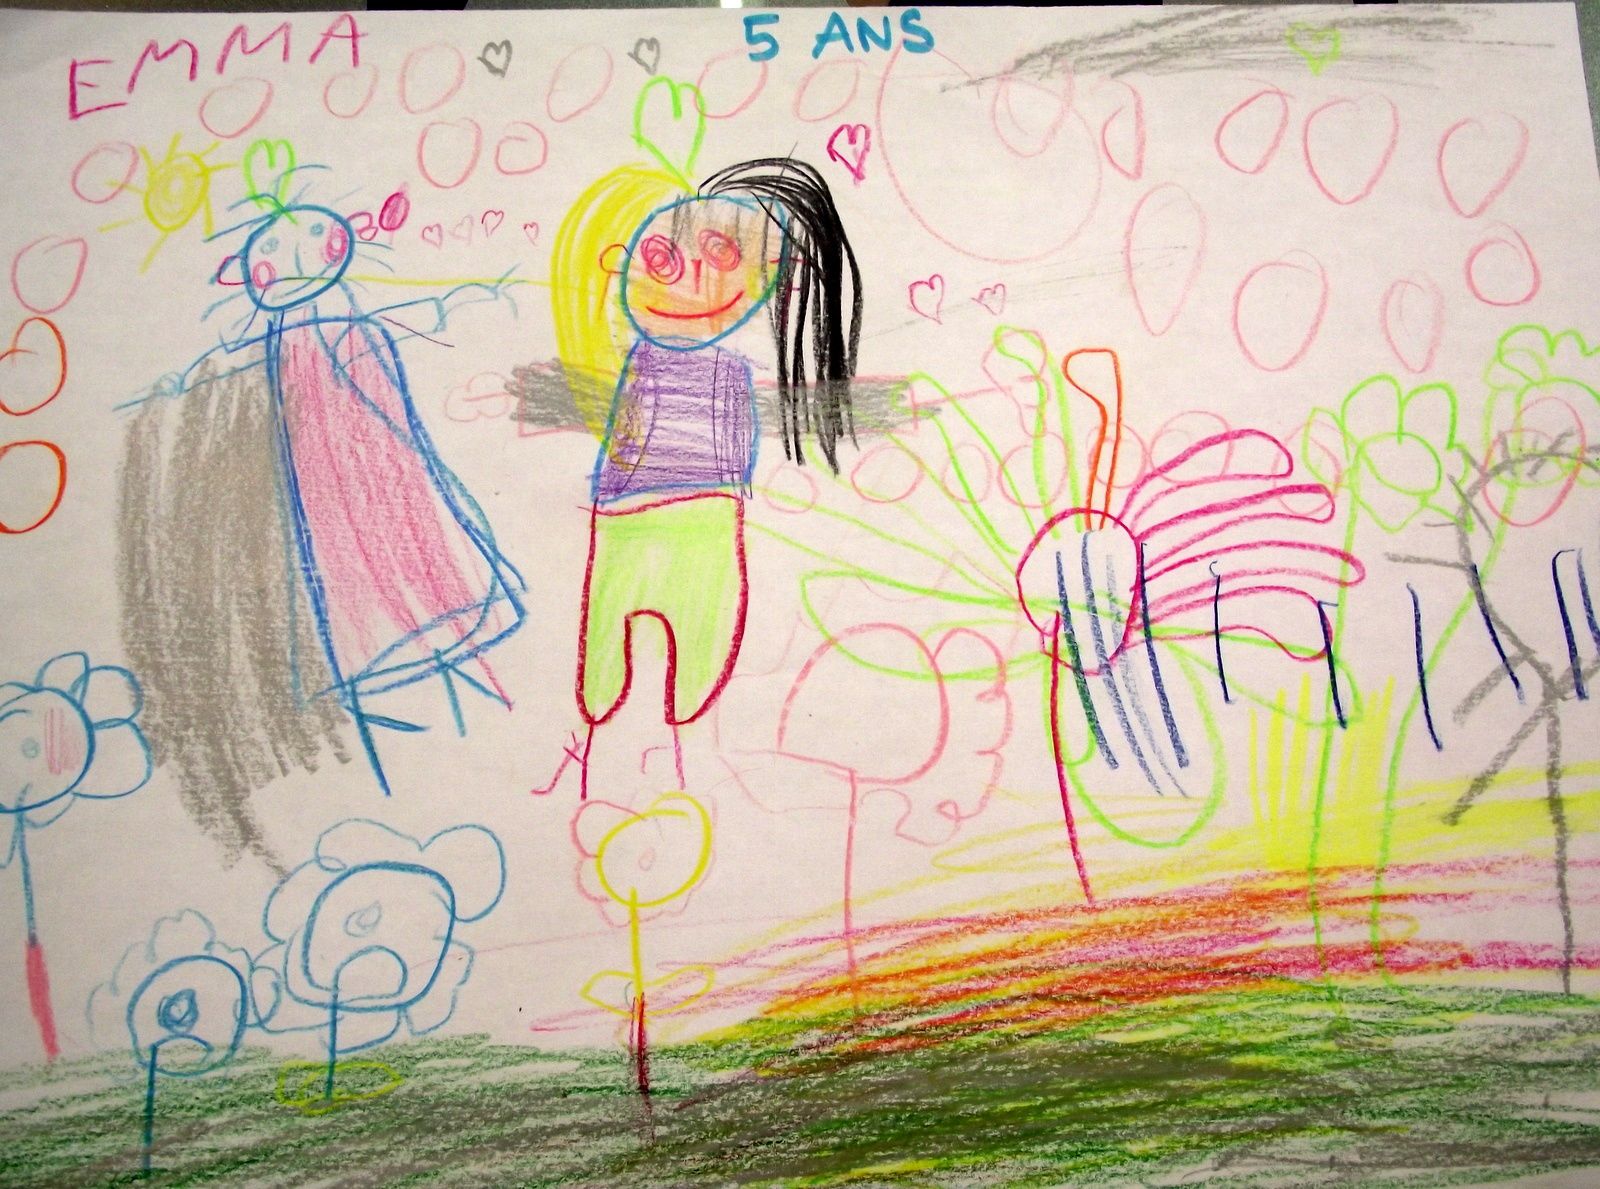 A l'occasion de la Fête des Mères et des Pères, l'A.C.A.T. organise un concours de dessins d'enfants en partenariat avec les écoles Marcel Pagnol et Marie Curie ainsi que l'association "Fadadecuba" qui exposera les dessins place de la gare.